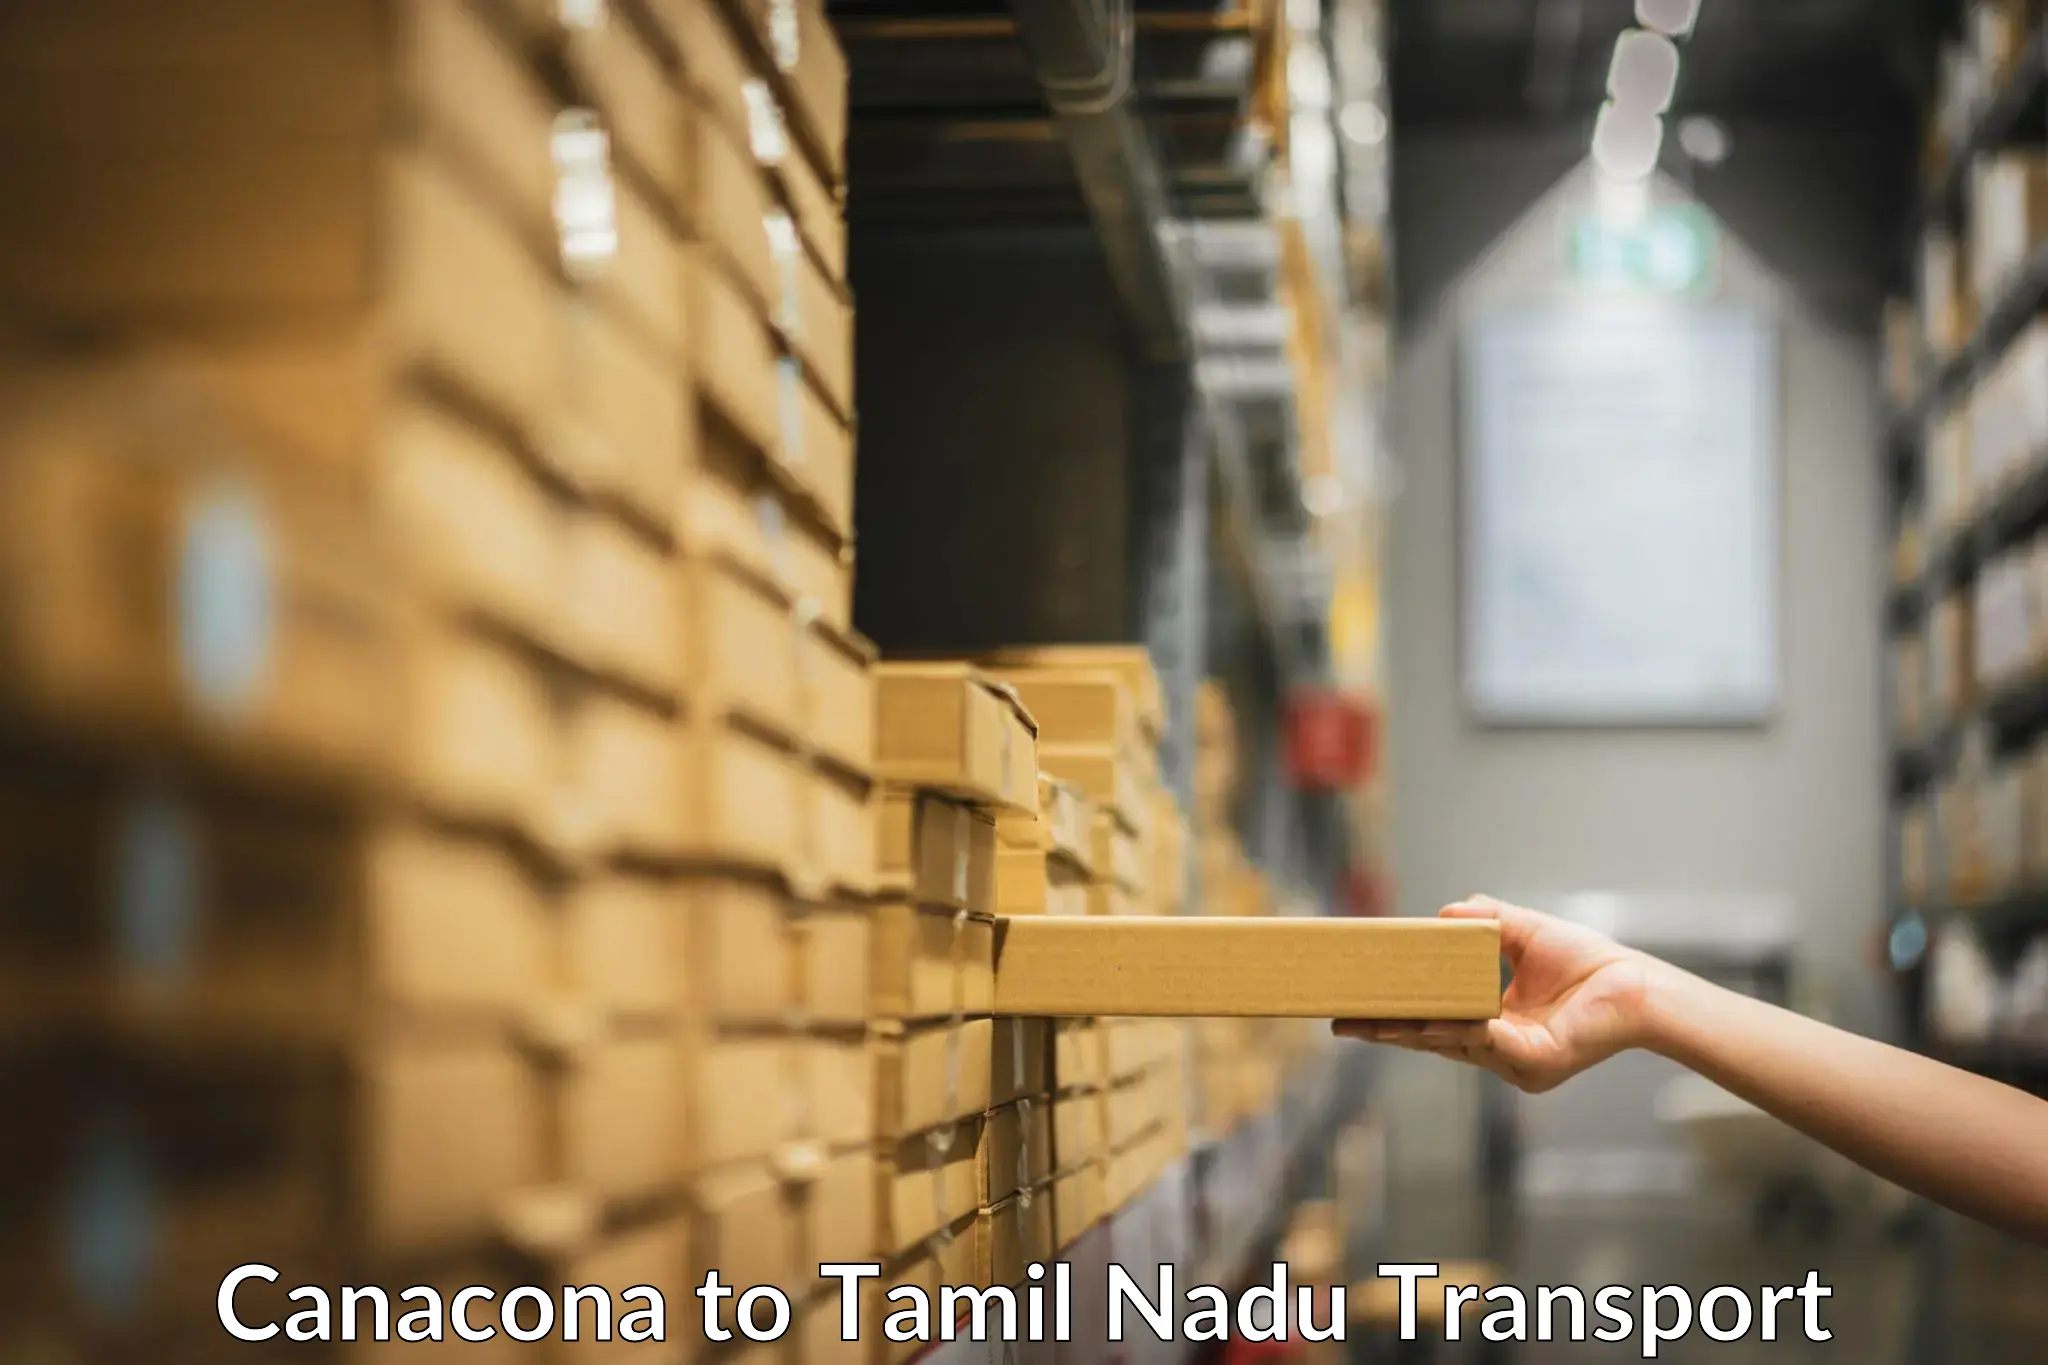 Shipping partner Canacona to Tamil Nadu